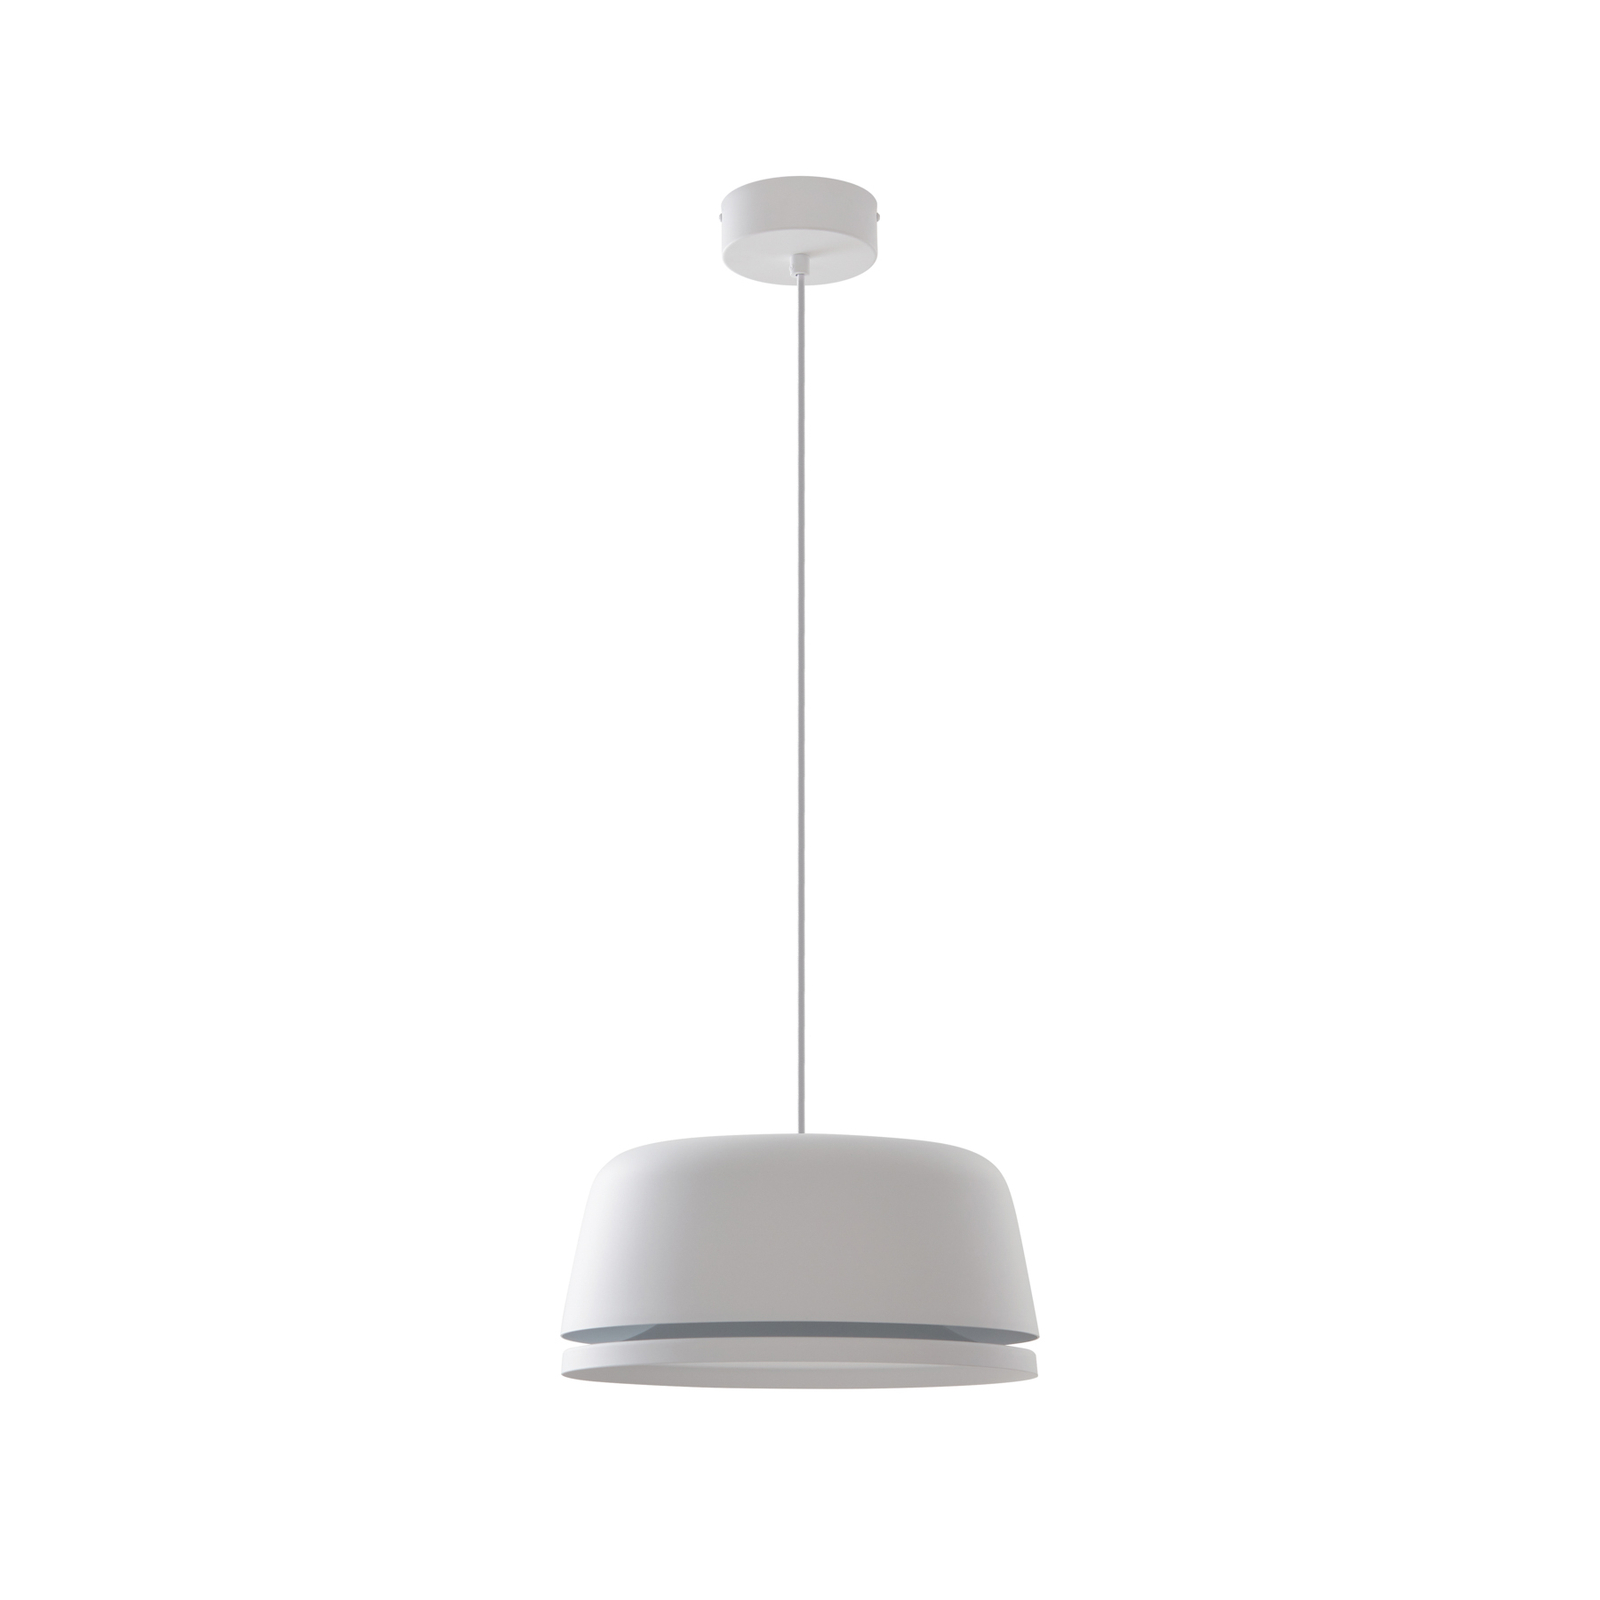 Lucande Faelinor LED pendant light, white